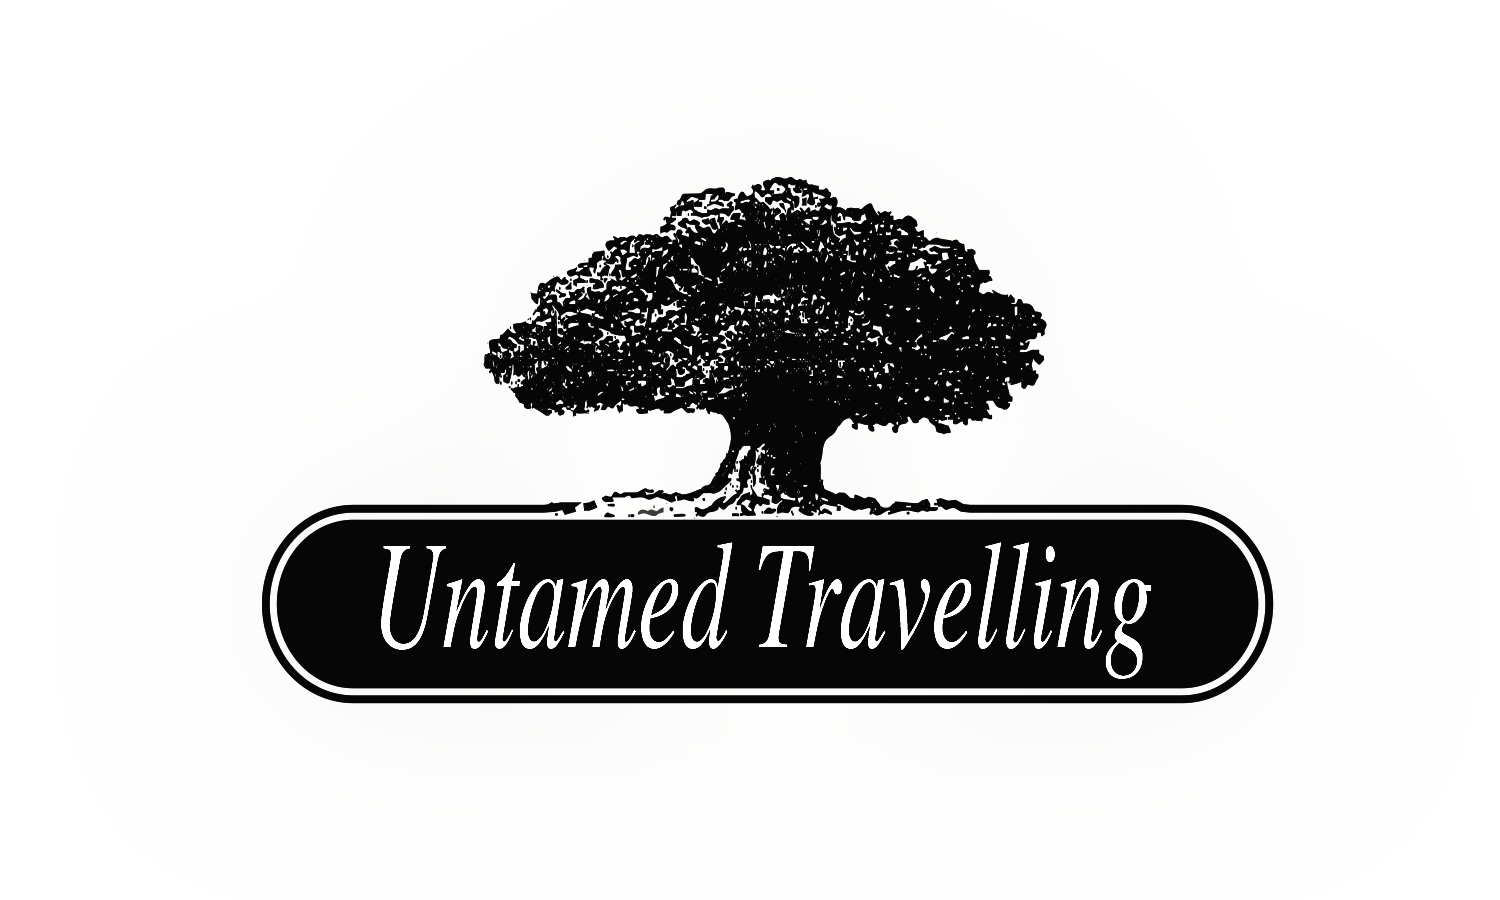 Untamed Travelling - maatwerkspecialist voor reizen wereldwijd met meer dan 20 jaar ervaring